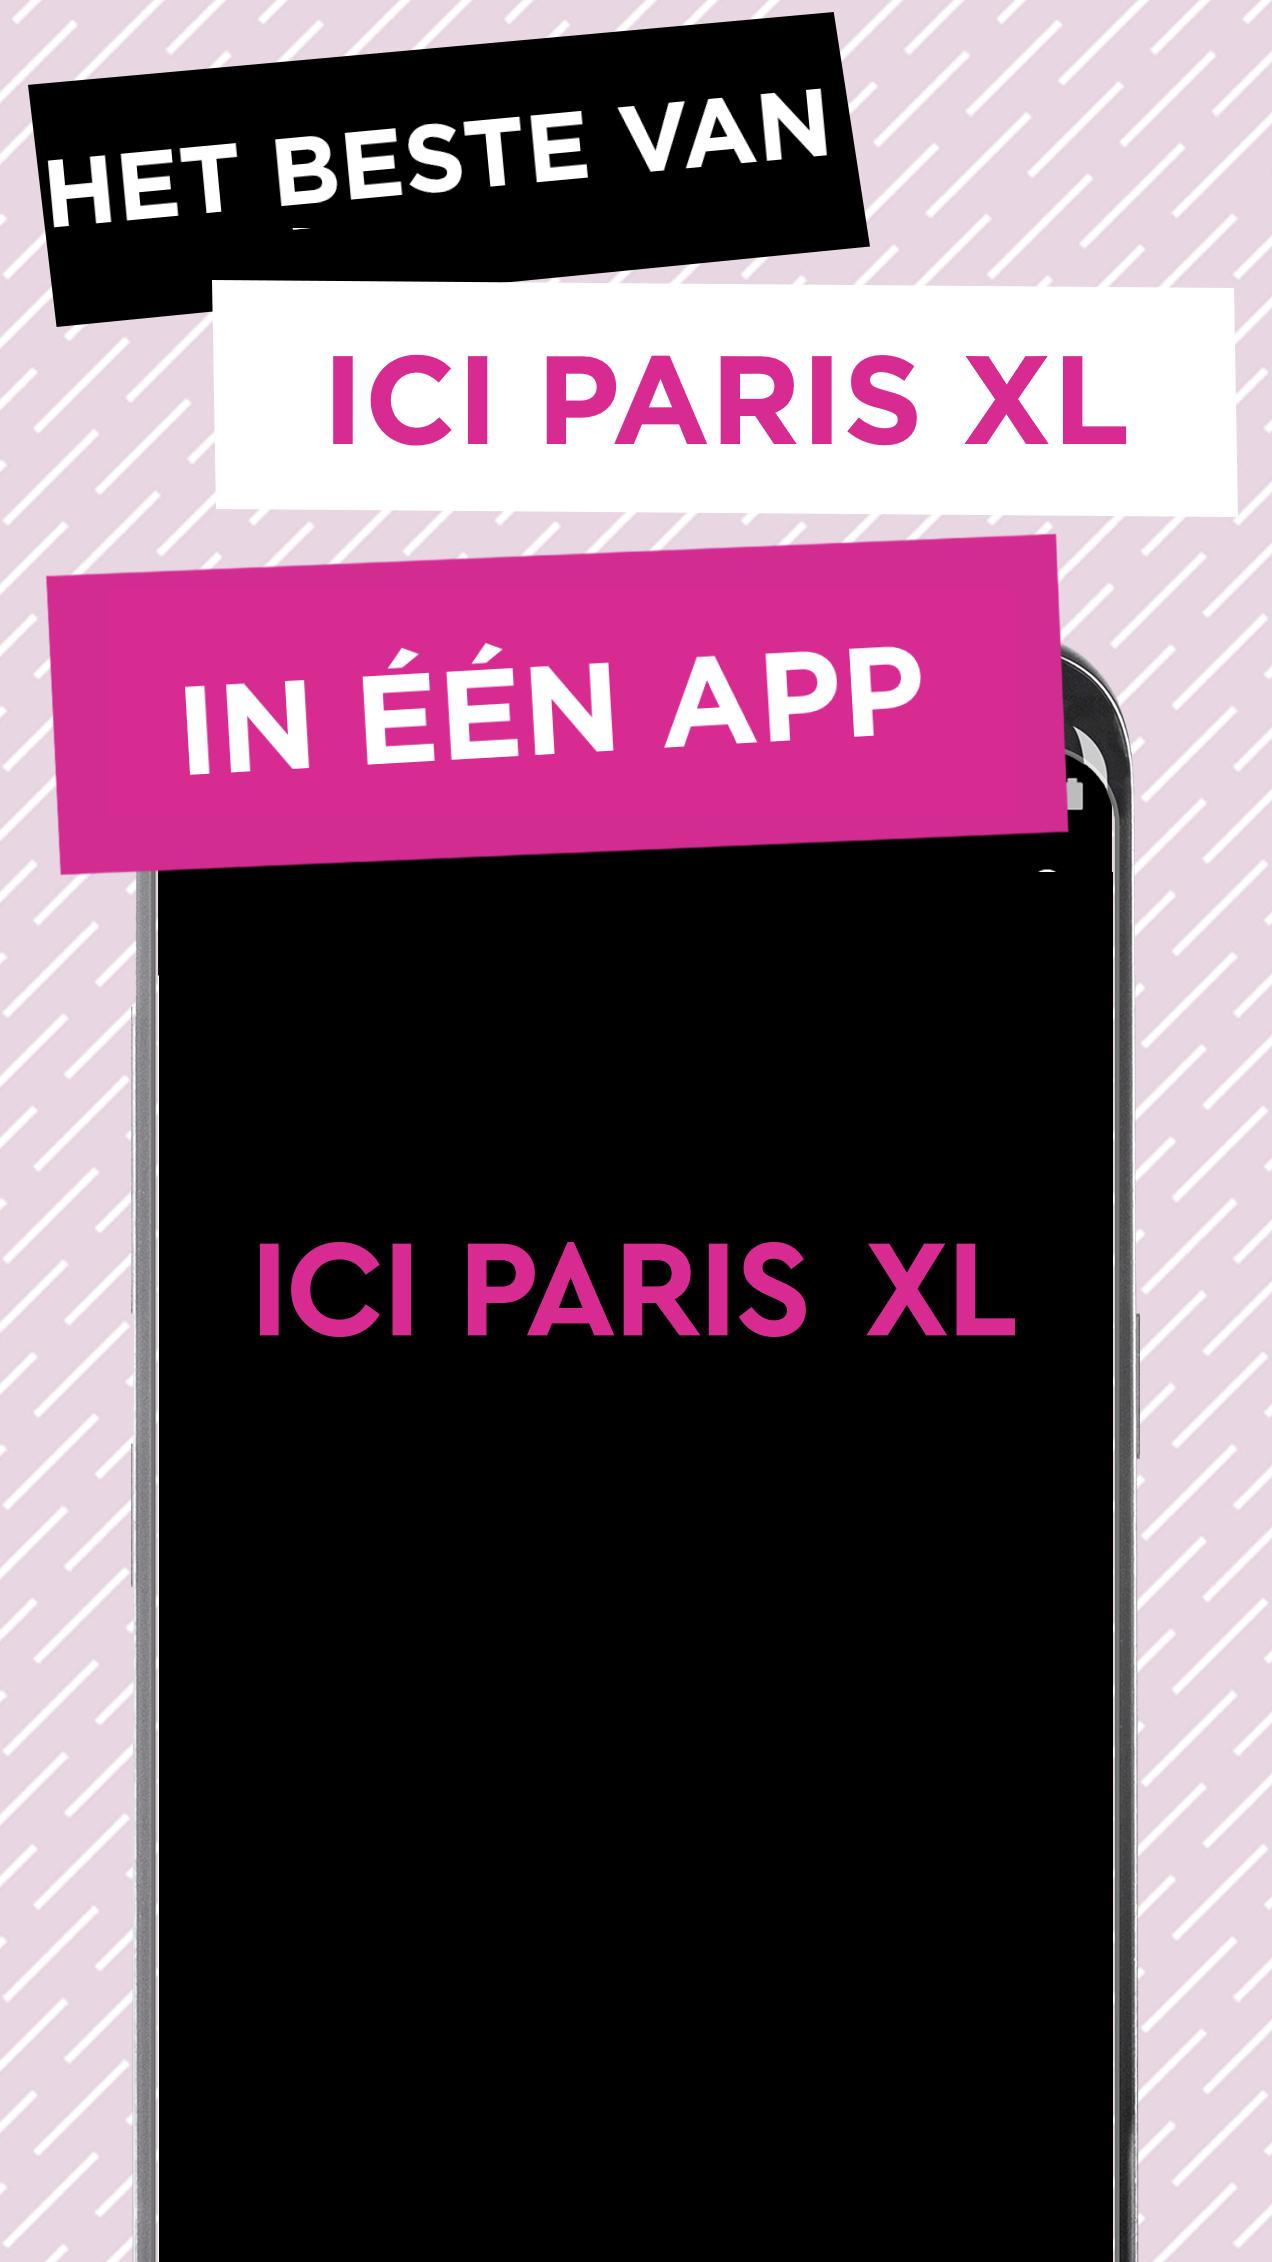 reparatie Aandringen Vervolgen ICI PARIS XL for Android - APK Download